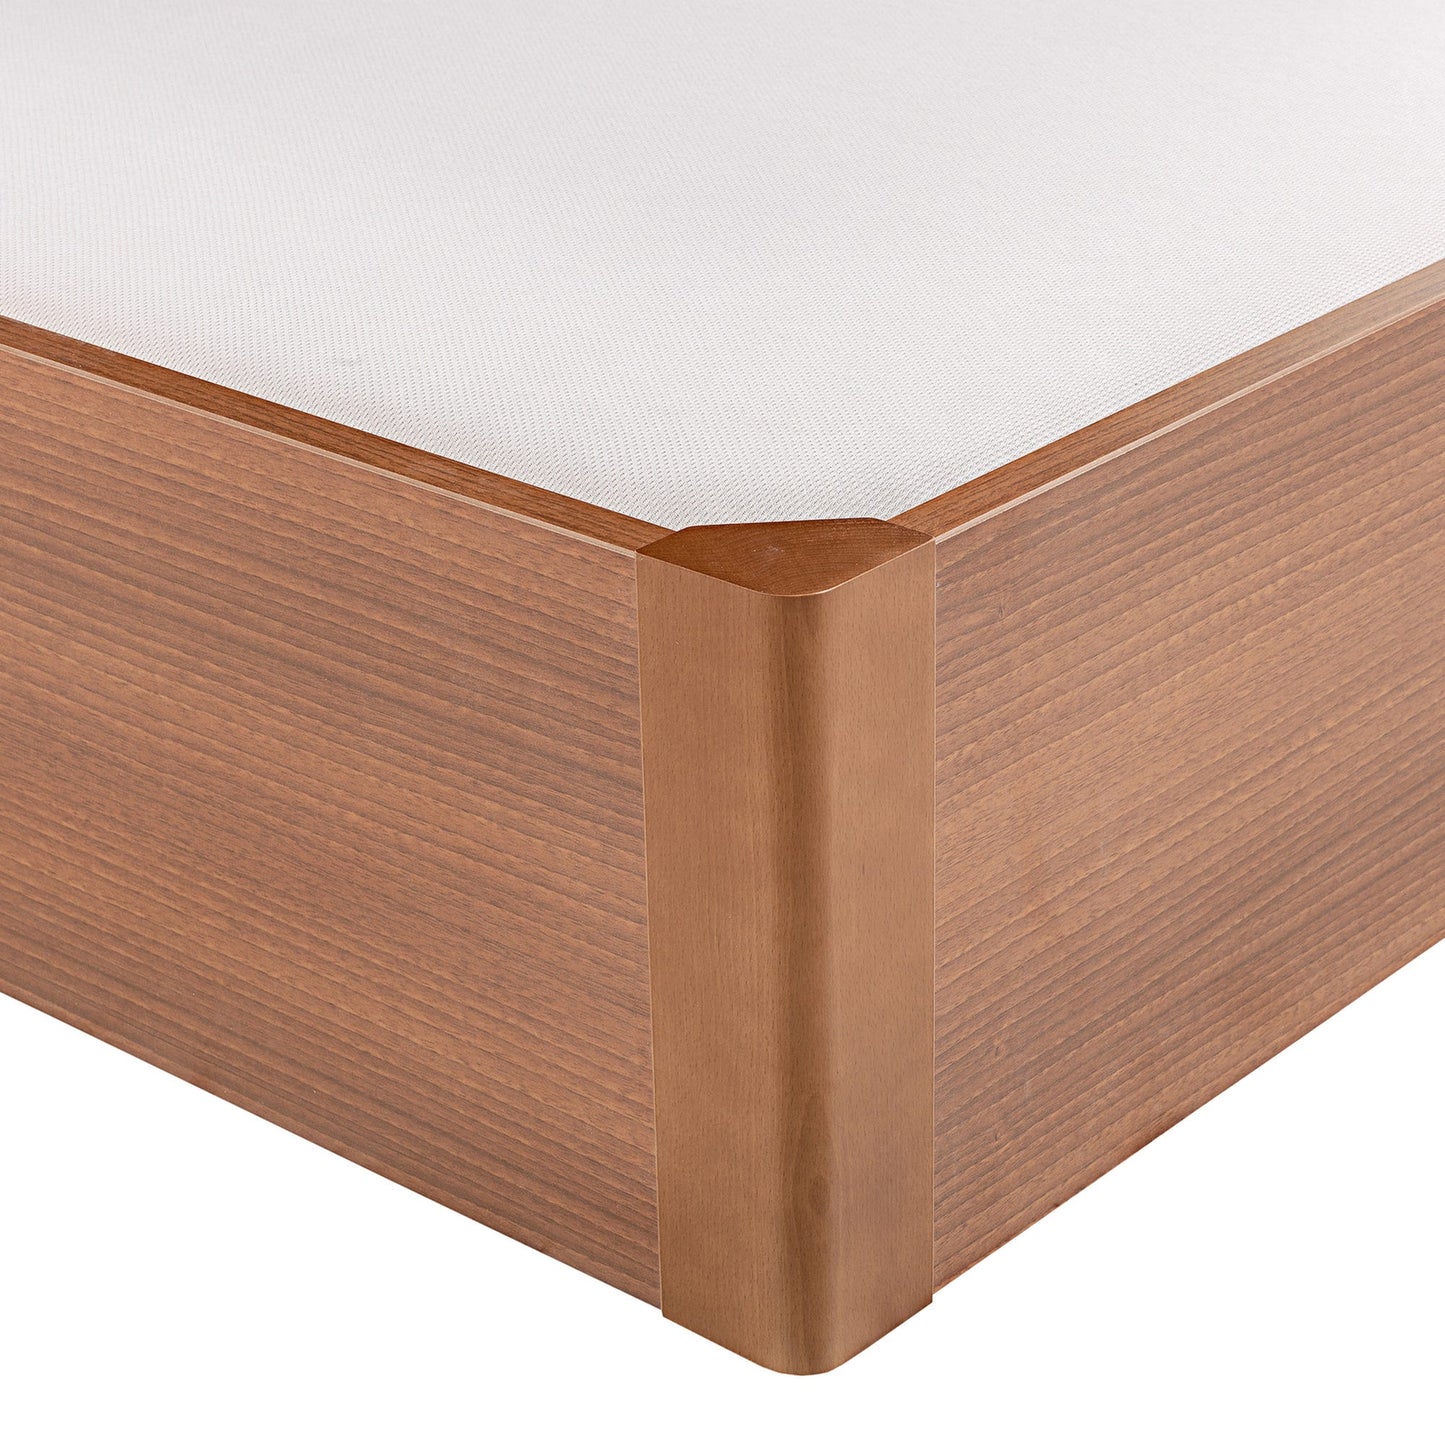 Canapé abatible de madera tapa única de color cerezo - DESIGN - 160x190